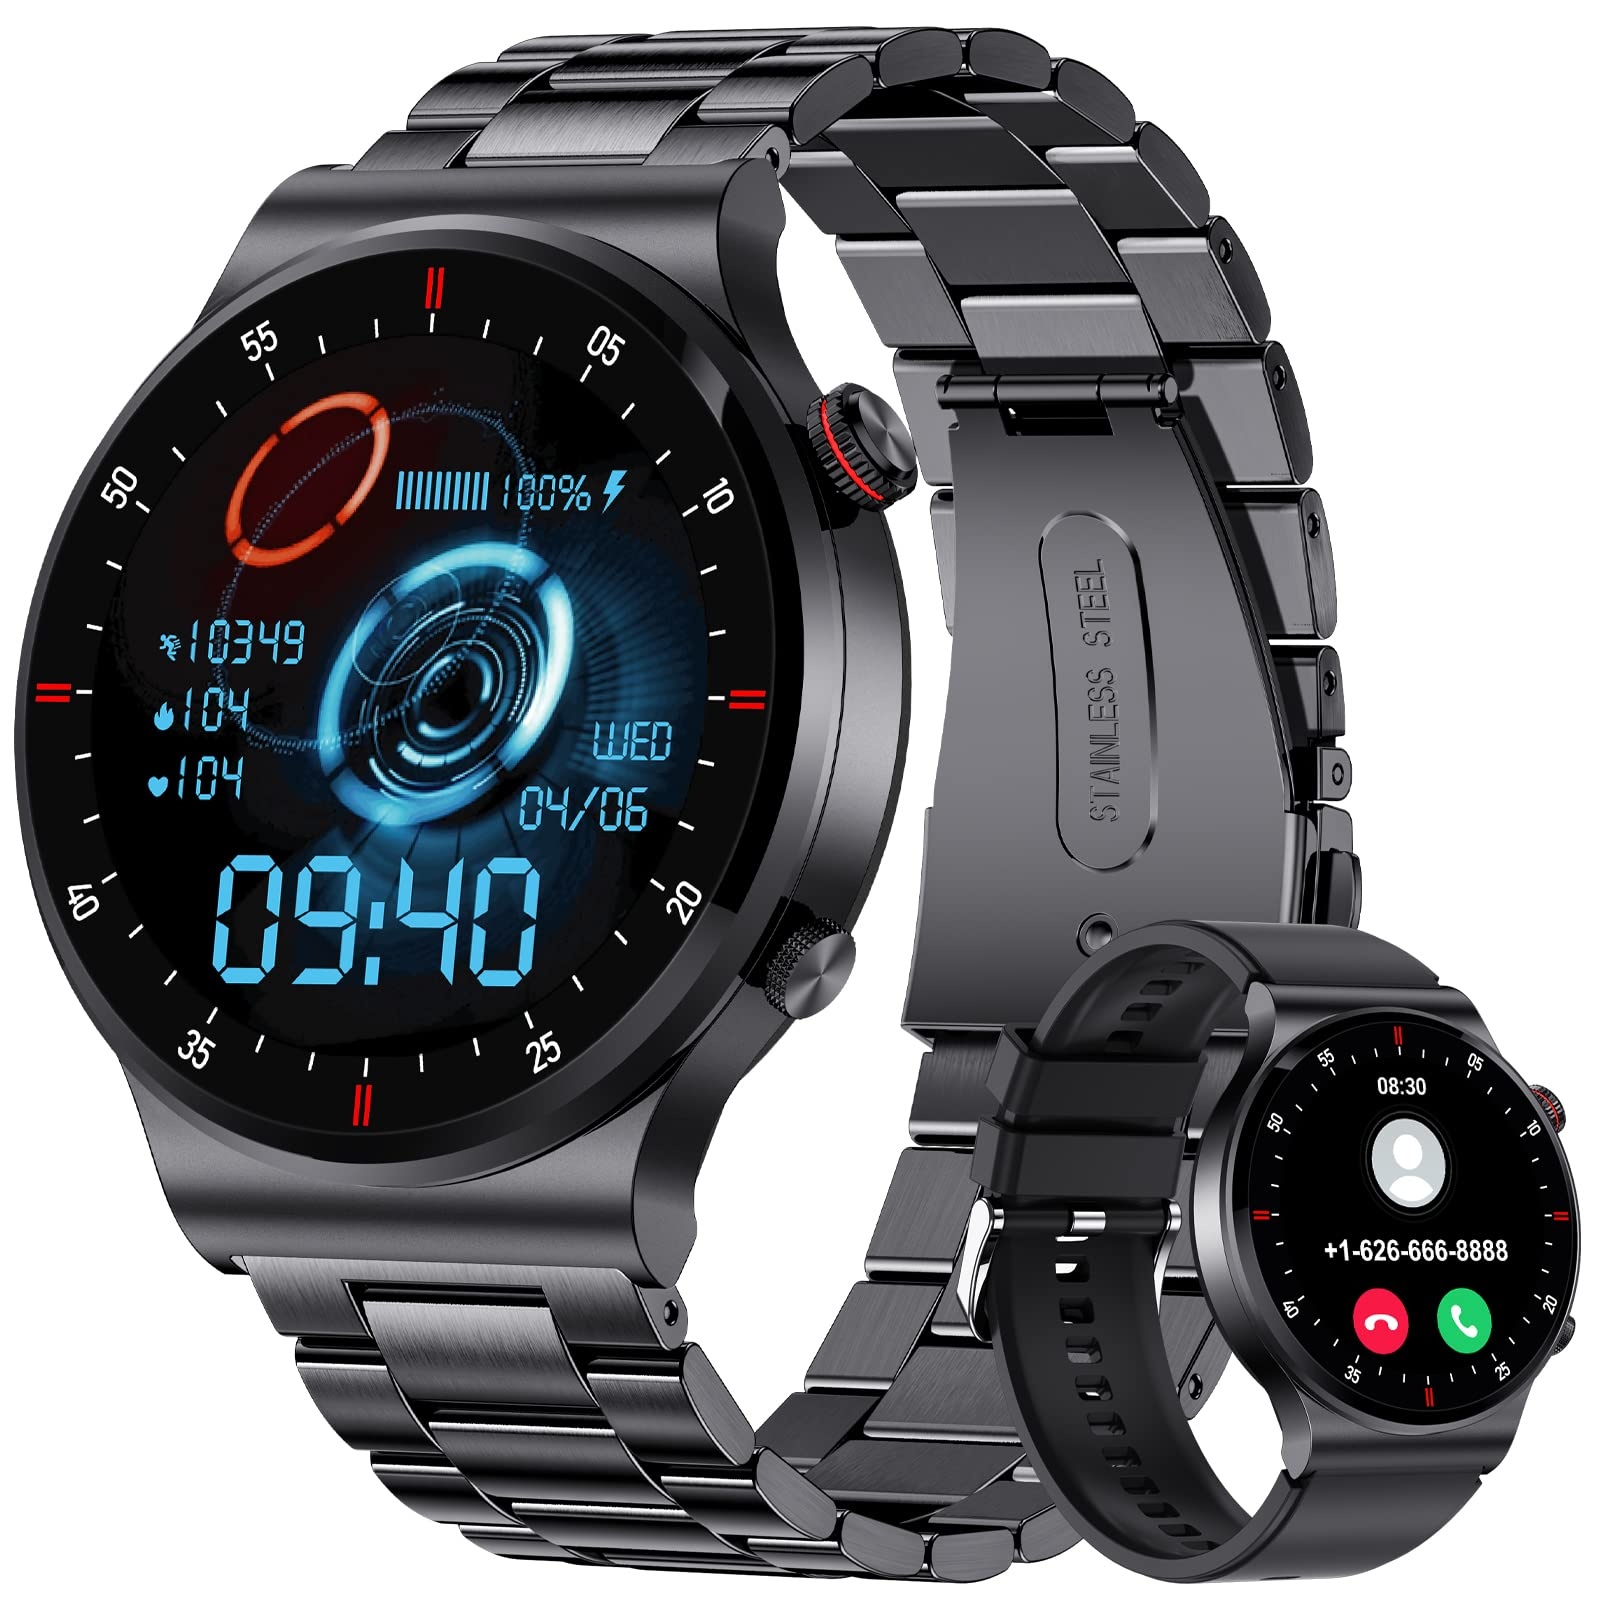 Smartwatch Herren mit Telefonfunktion,1.32" HD Touchscreen Fitness Tracker,100+ Sportmodi,IP68 Wasserdicht Sportuhr mit Herzfrequenz Schlafmonitor,Edelstahl Smart Watch für Android iOS,Schwarz